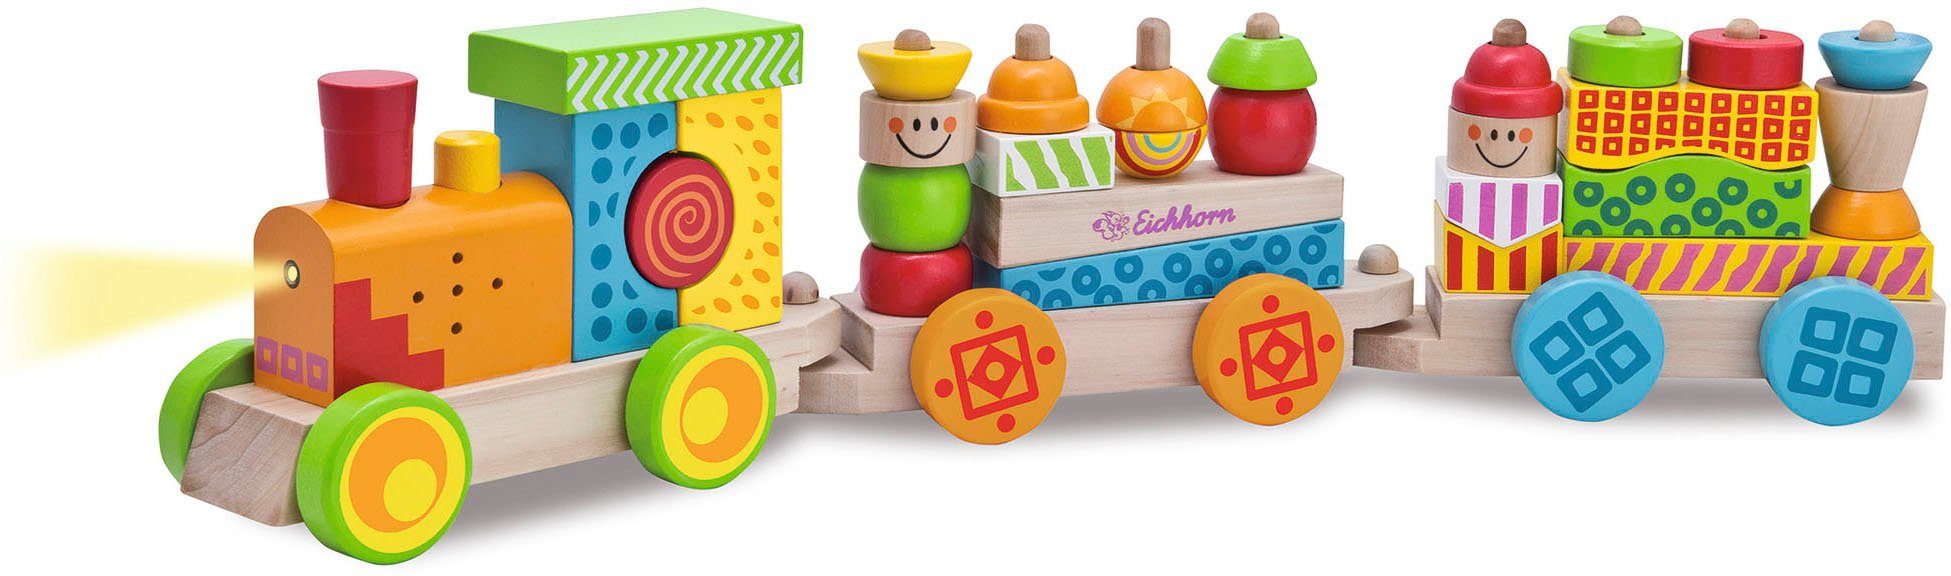 Eichhorn Spielzeug-Eisenbahn Holzspielzeug, Color, Holz-Soundzug, mit Licht- und Soundfunktion